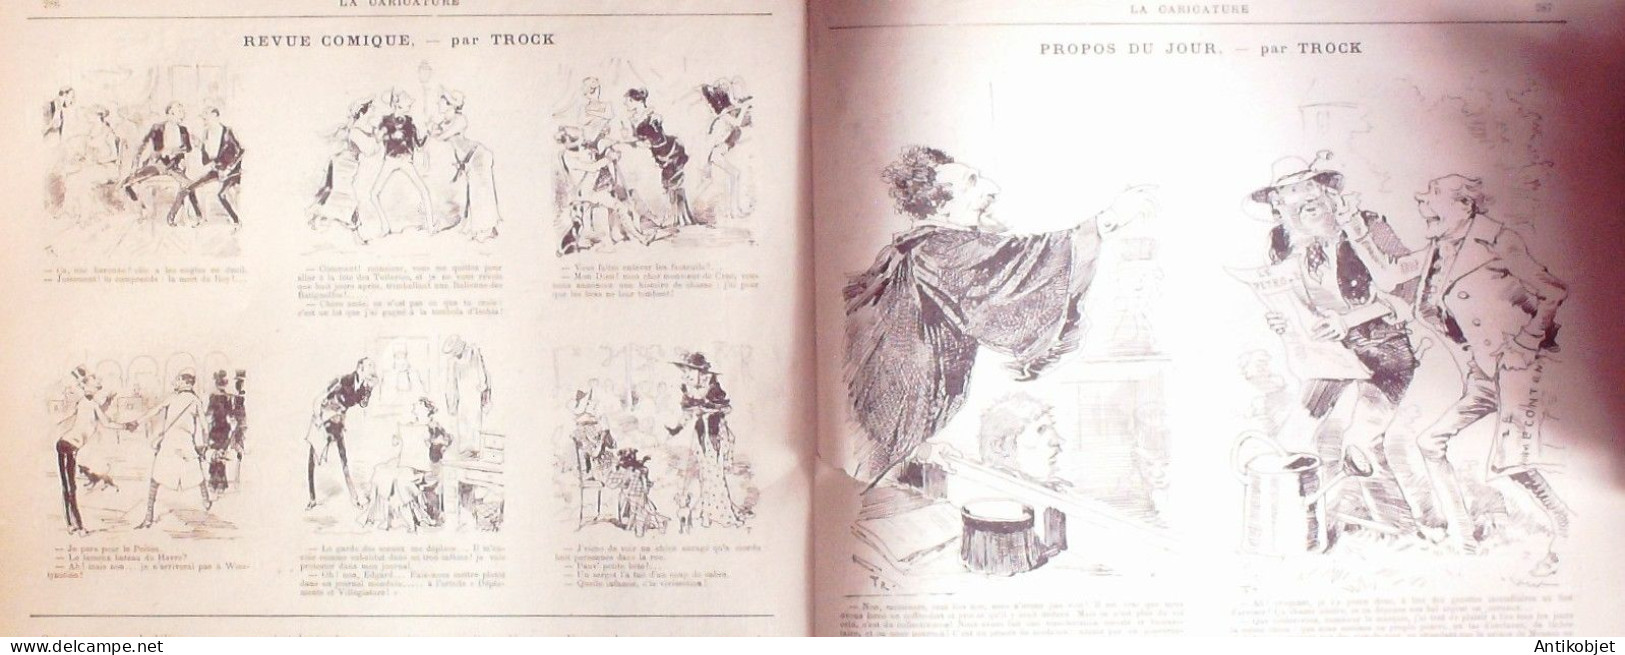 La Caricature 1883 N°193 Potinville-sur-Mer Robida Commerce WogTtrock - Zeitschriften - Vor 1900